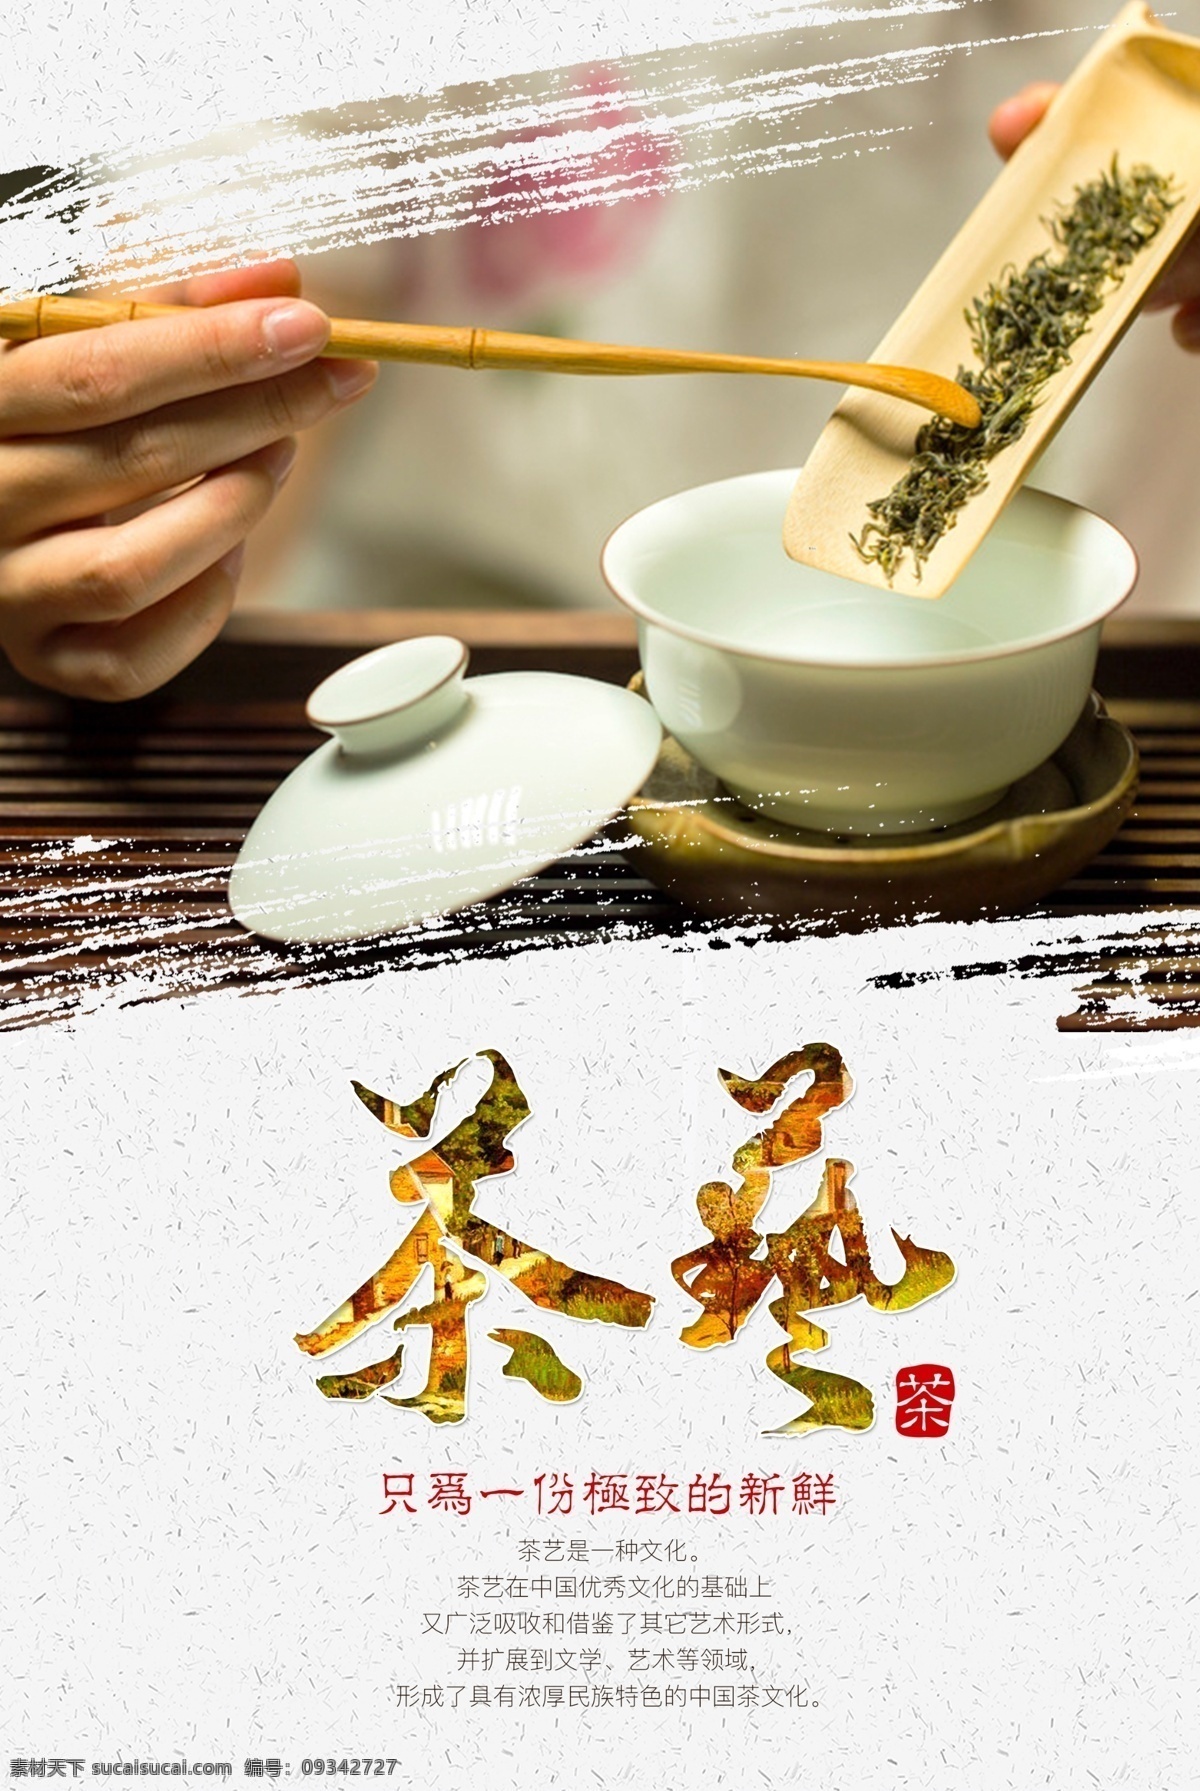 茶艺 活动 促销 宣传海报 宣传 海报